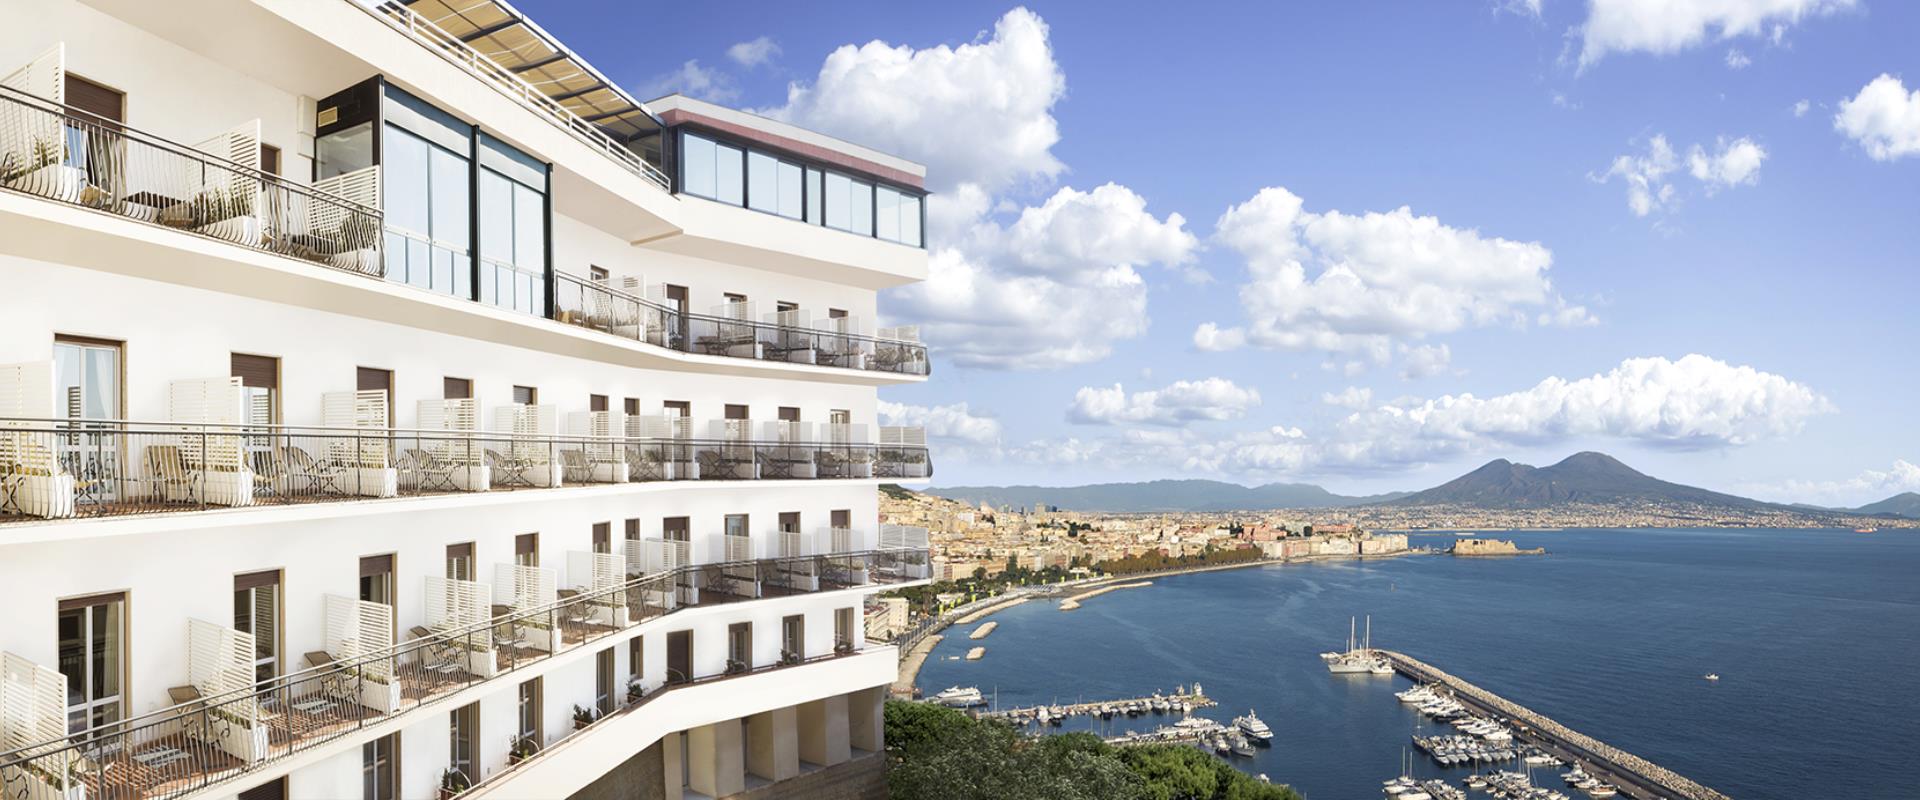 BW Signature Collection Hotel Paradiso Napoli - Albergo 4 Stelle a Posillipo con incredibile vista sul Golfo di Napoli